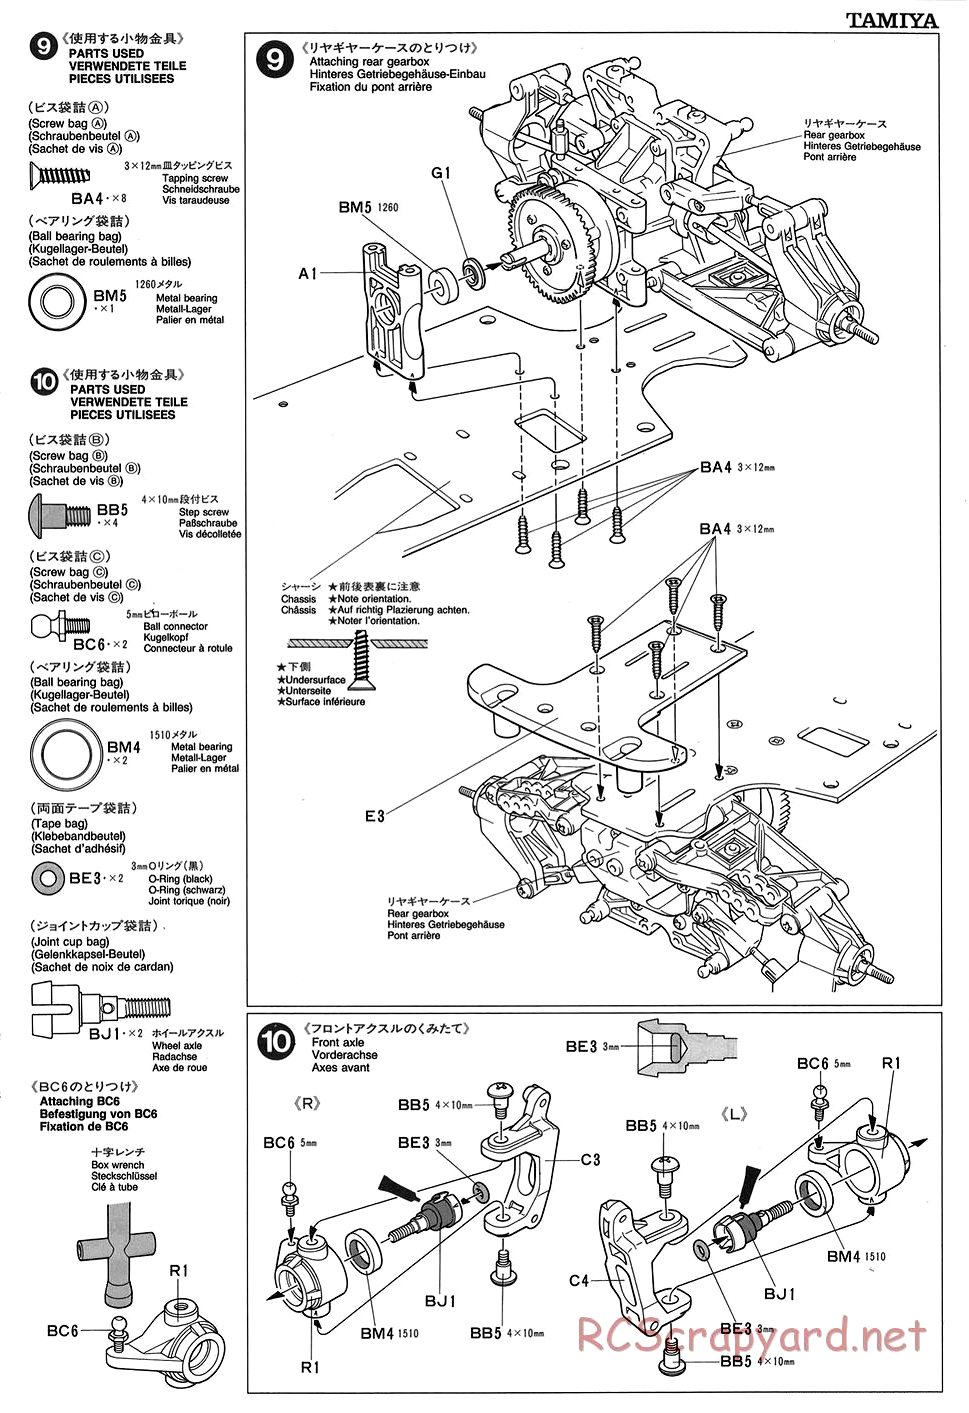 Tamiya - TGX Mk.1 Chassis - Manual - Page 7